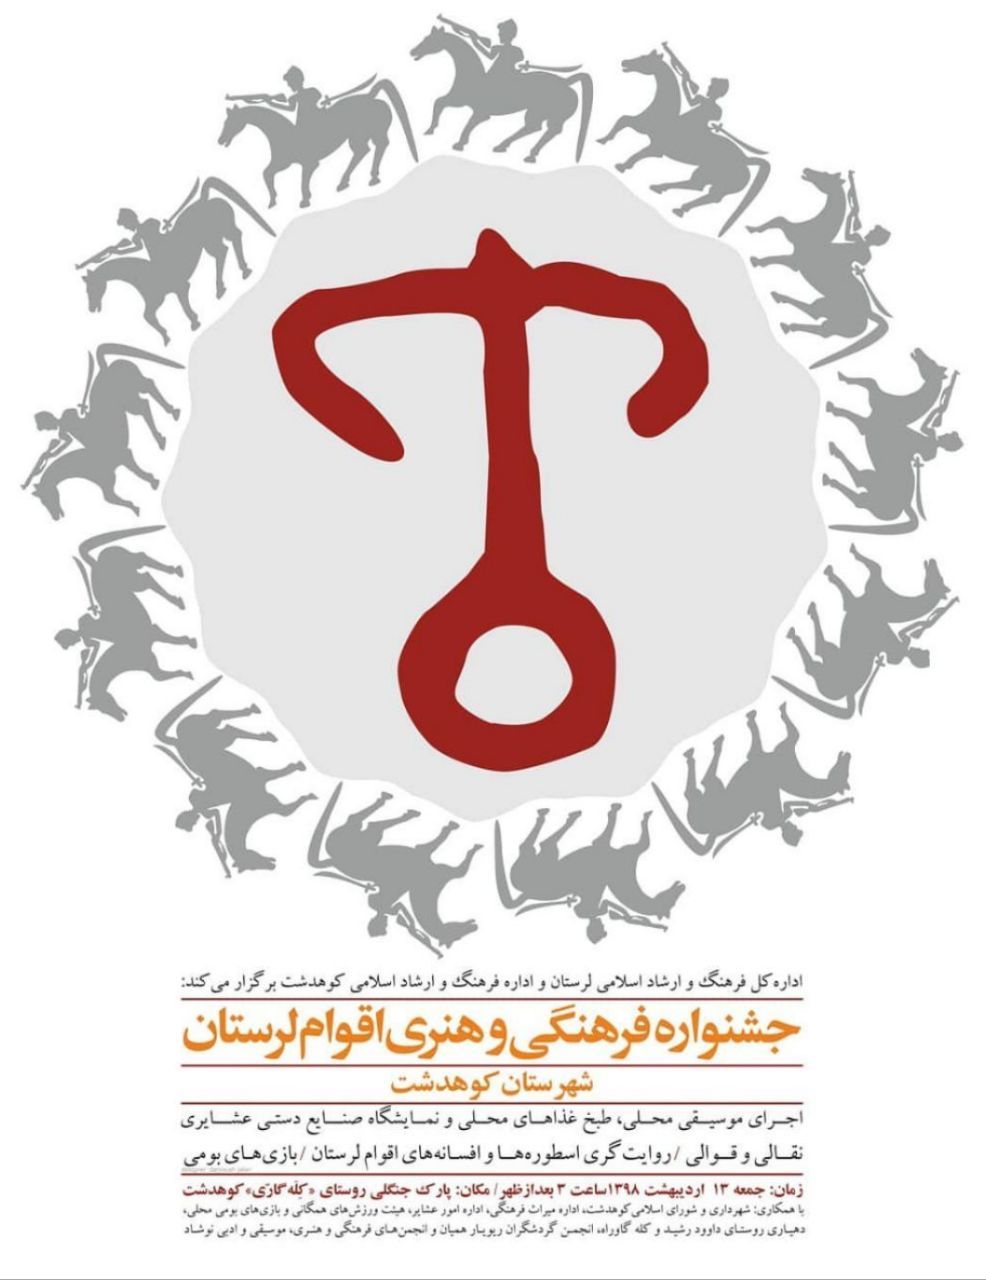 جشنواره فرهنگی و هنری اقوام لرستان در کوهدشت برگزار می شود